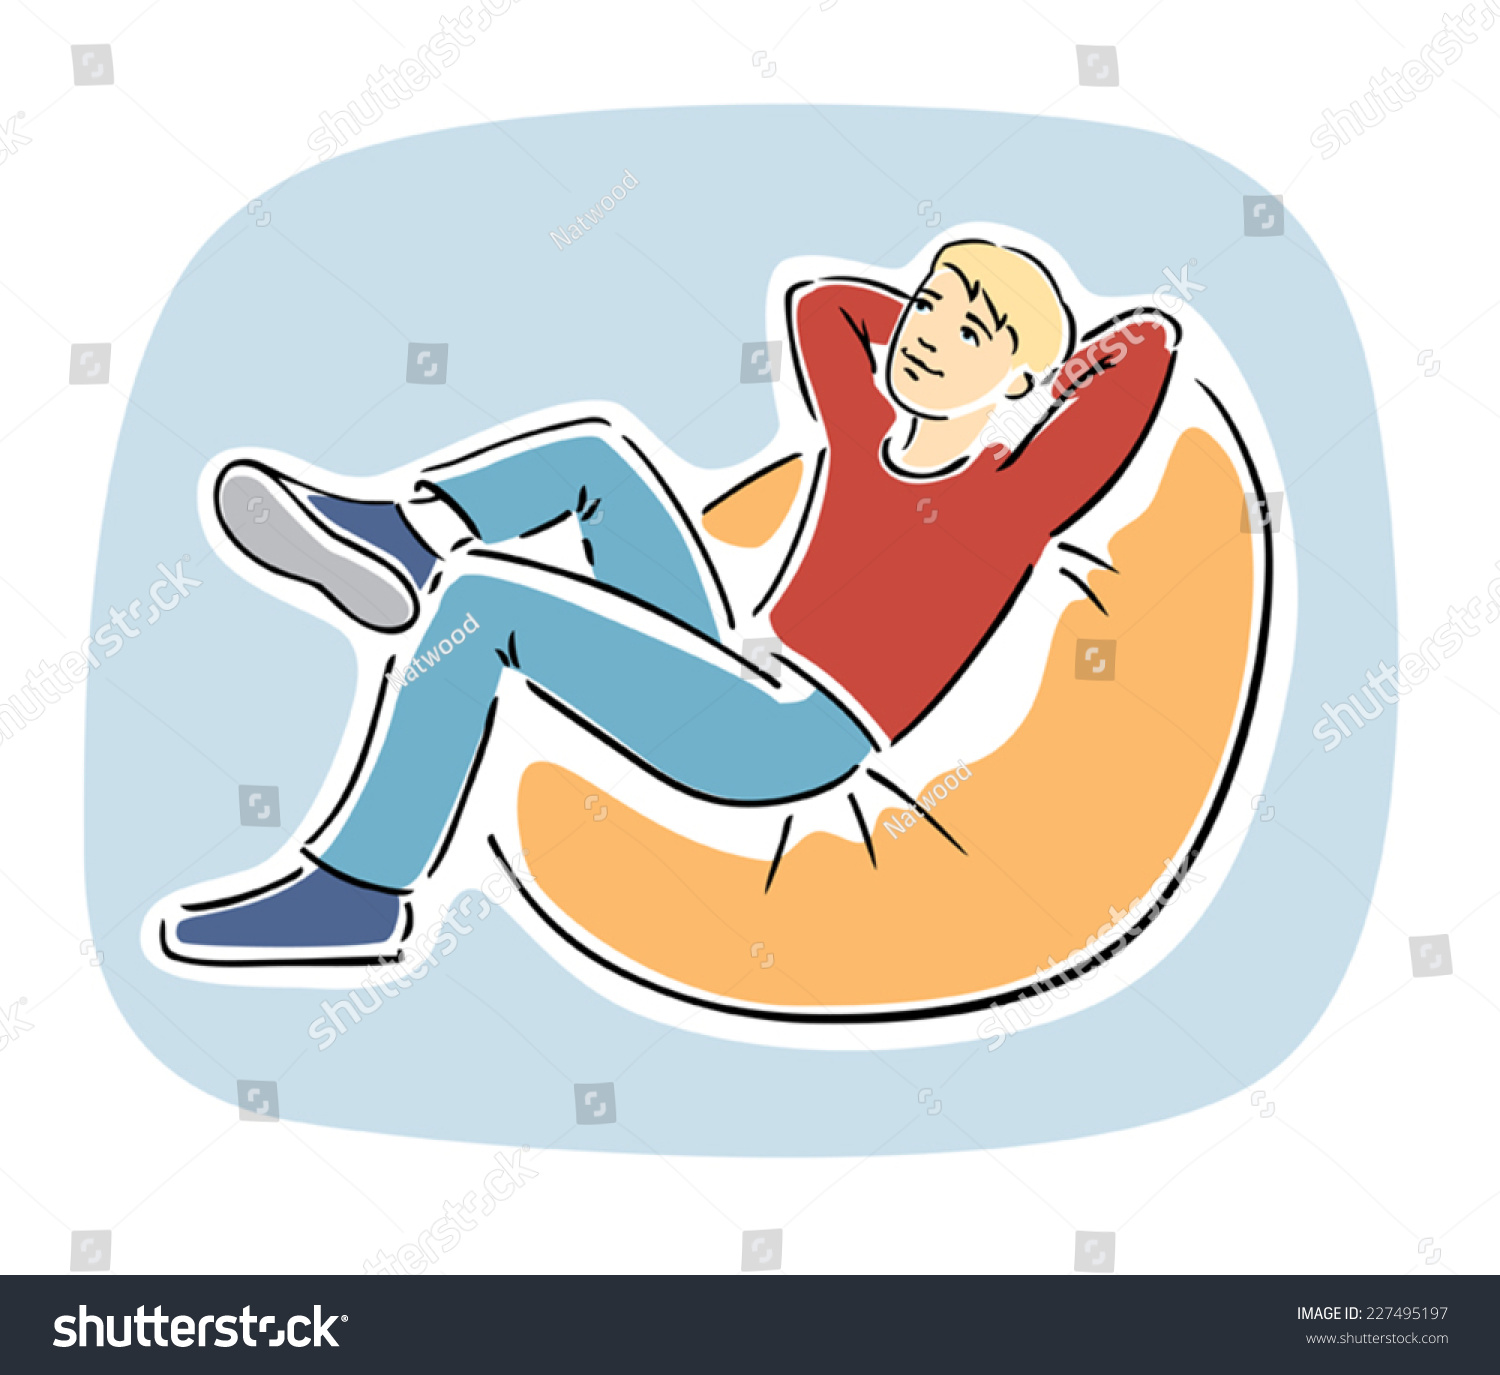 Сидящий человечек на пуфике